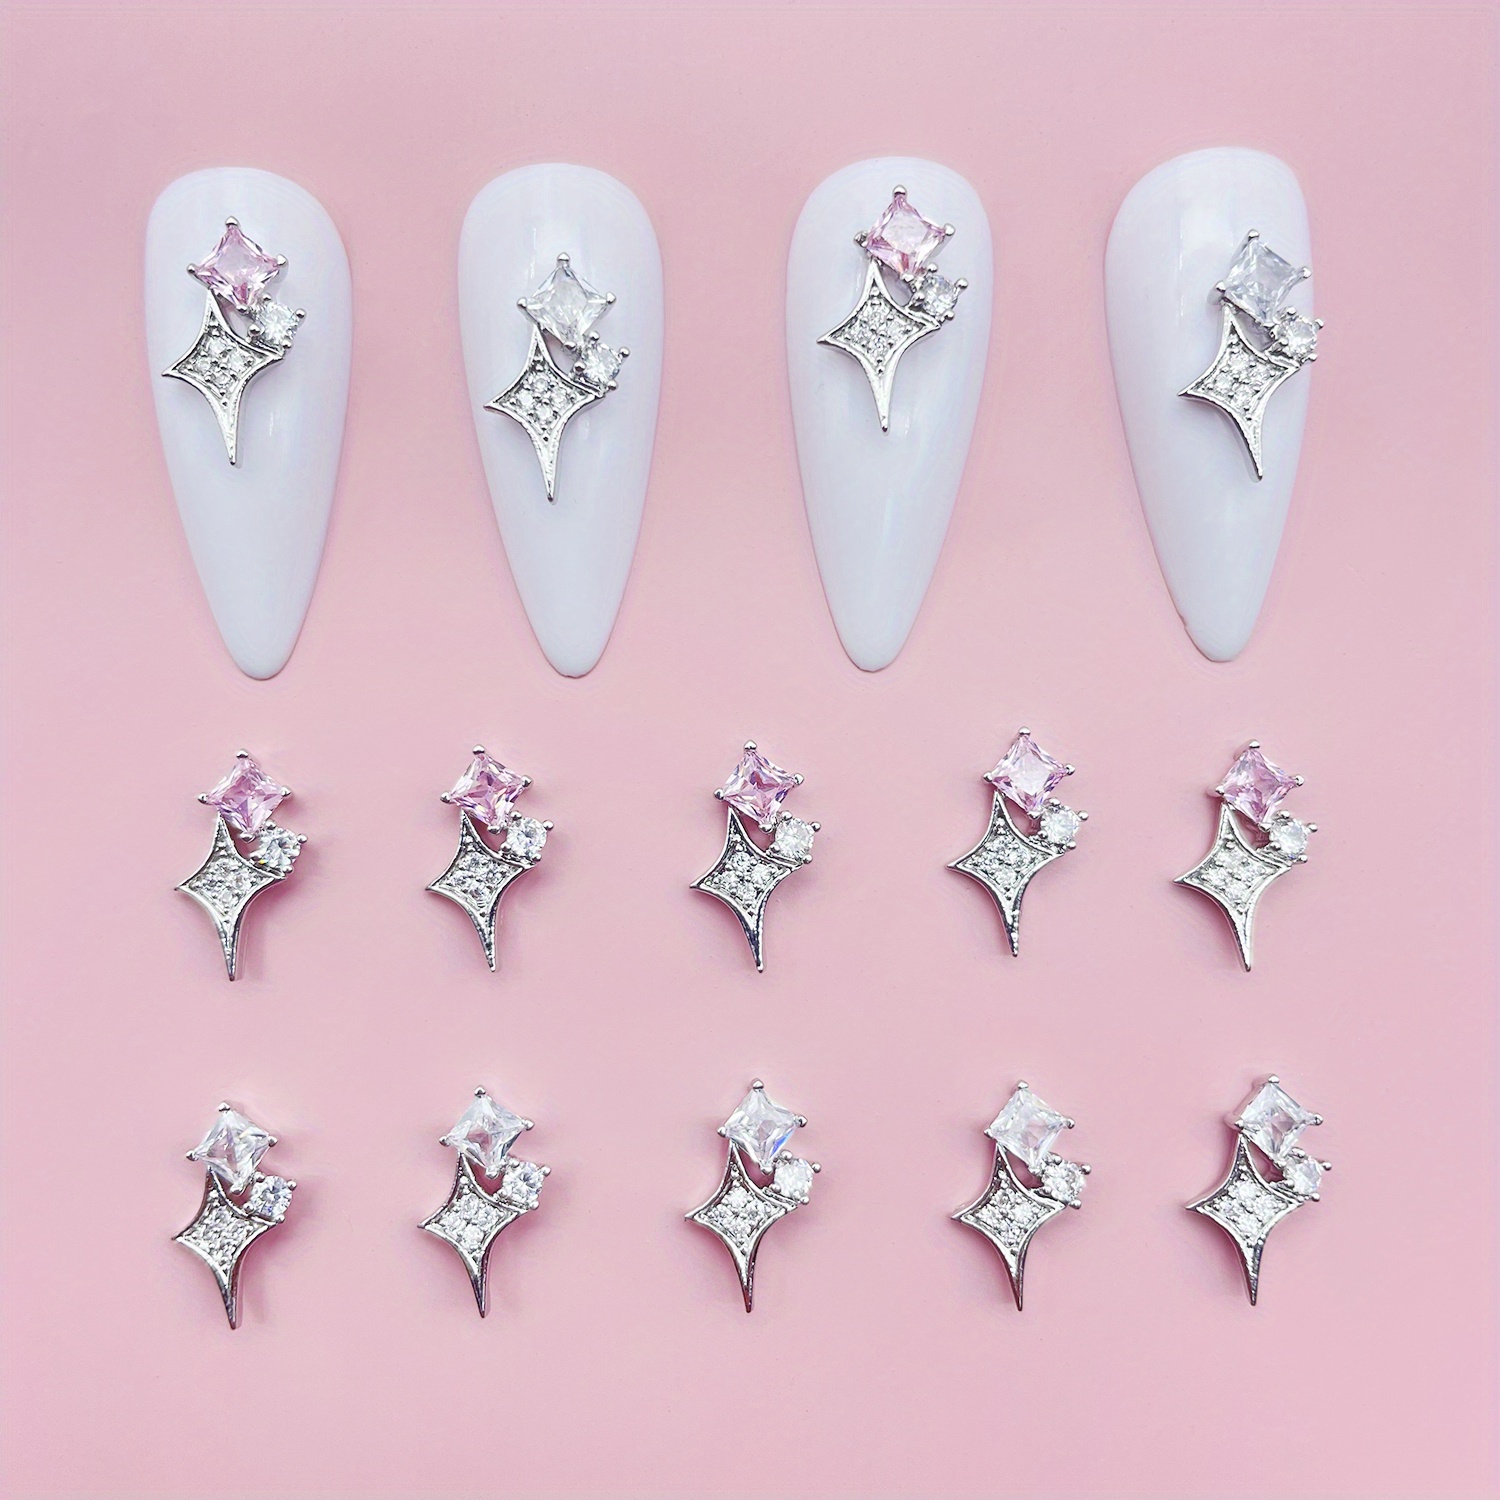 Suplidora de Belleza Mayand - ¡Descubre la magia de la manicura con  nuestras increíbles Perlas para Uñas! ✨💅 Dale un toque único a tus uñas  con nuestros accesorios de alta calidad. Disponibles